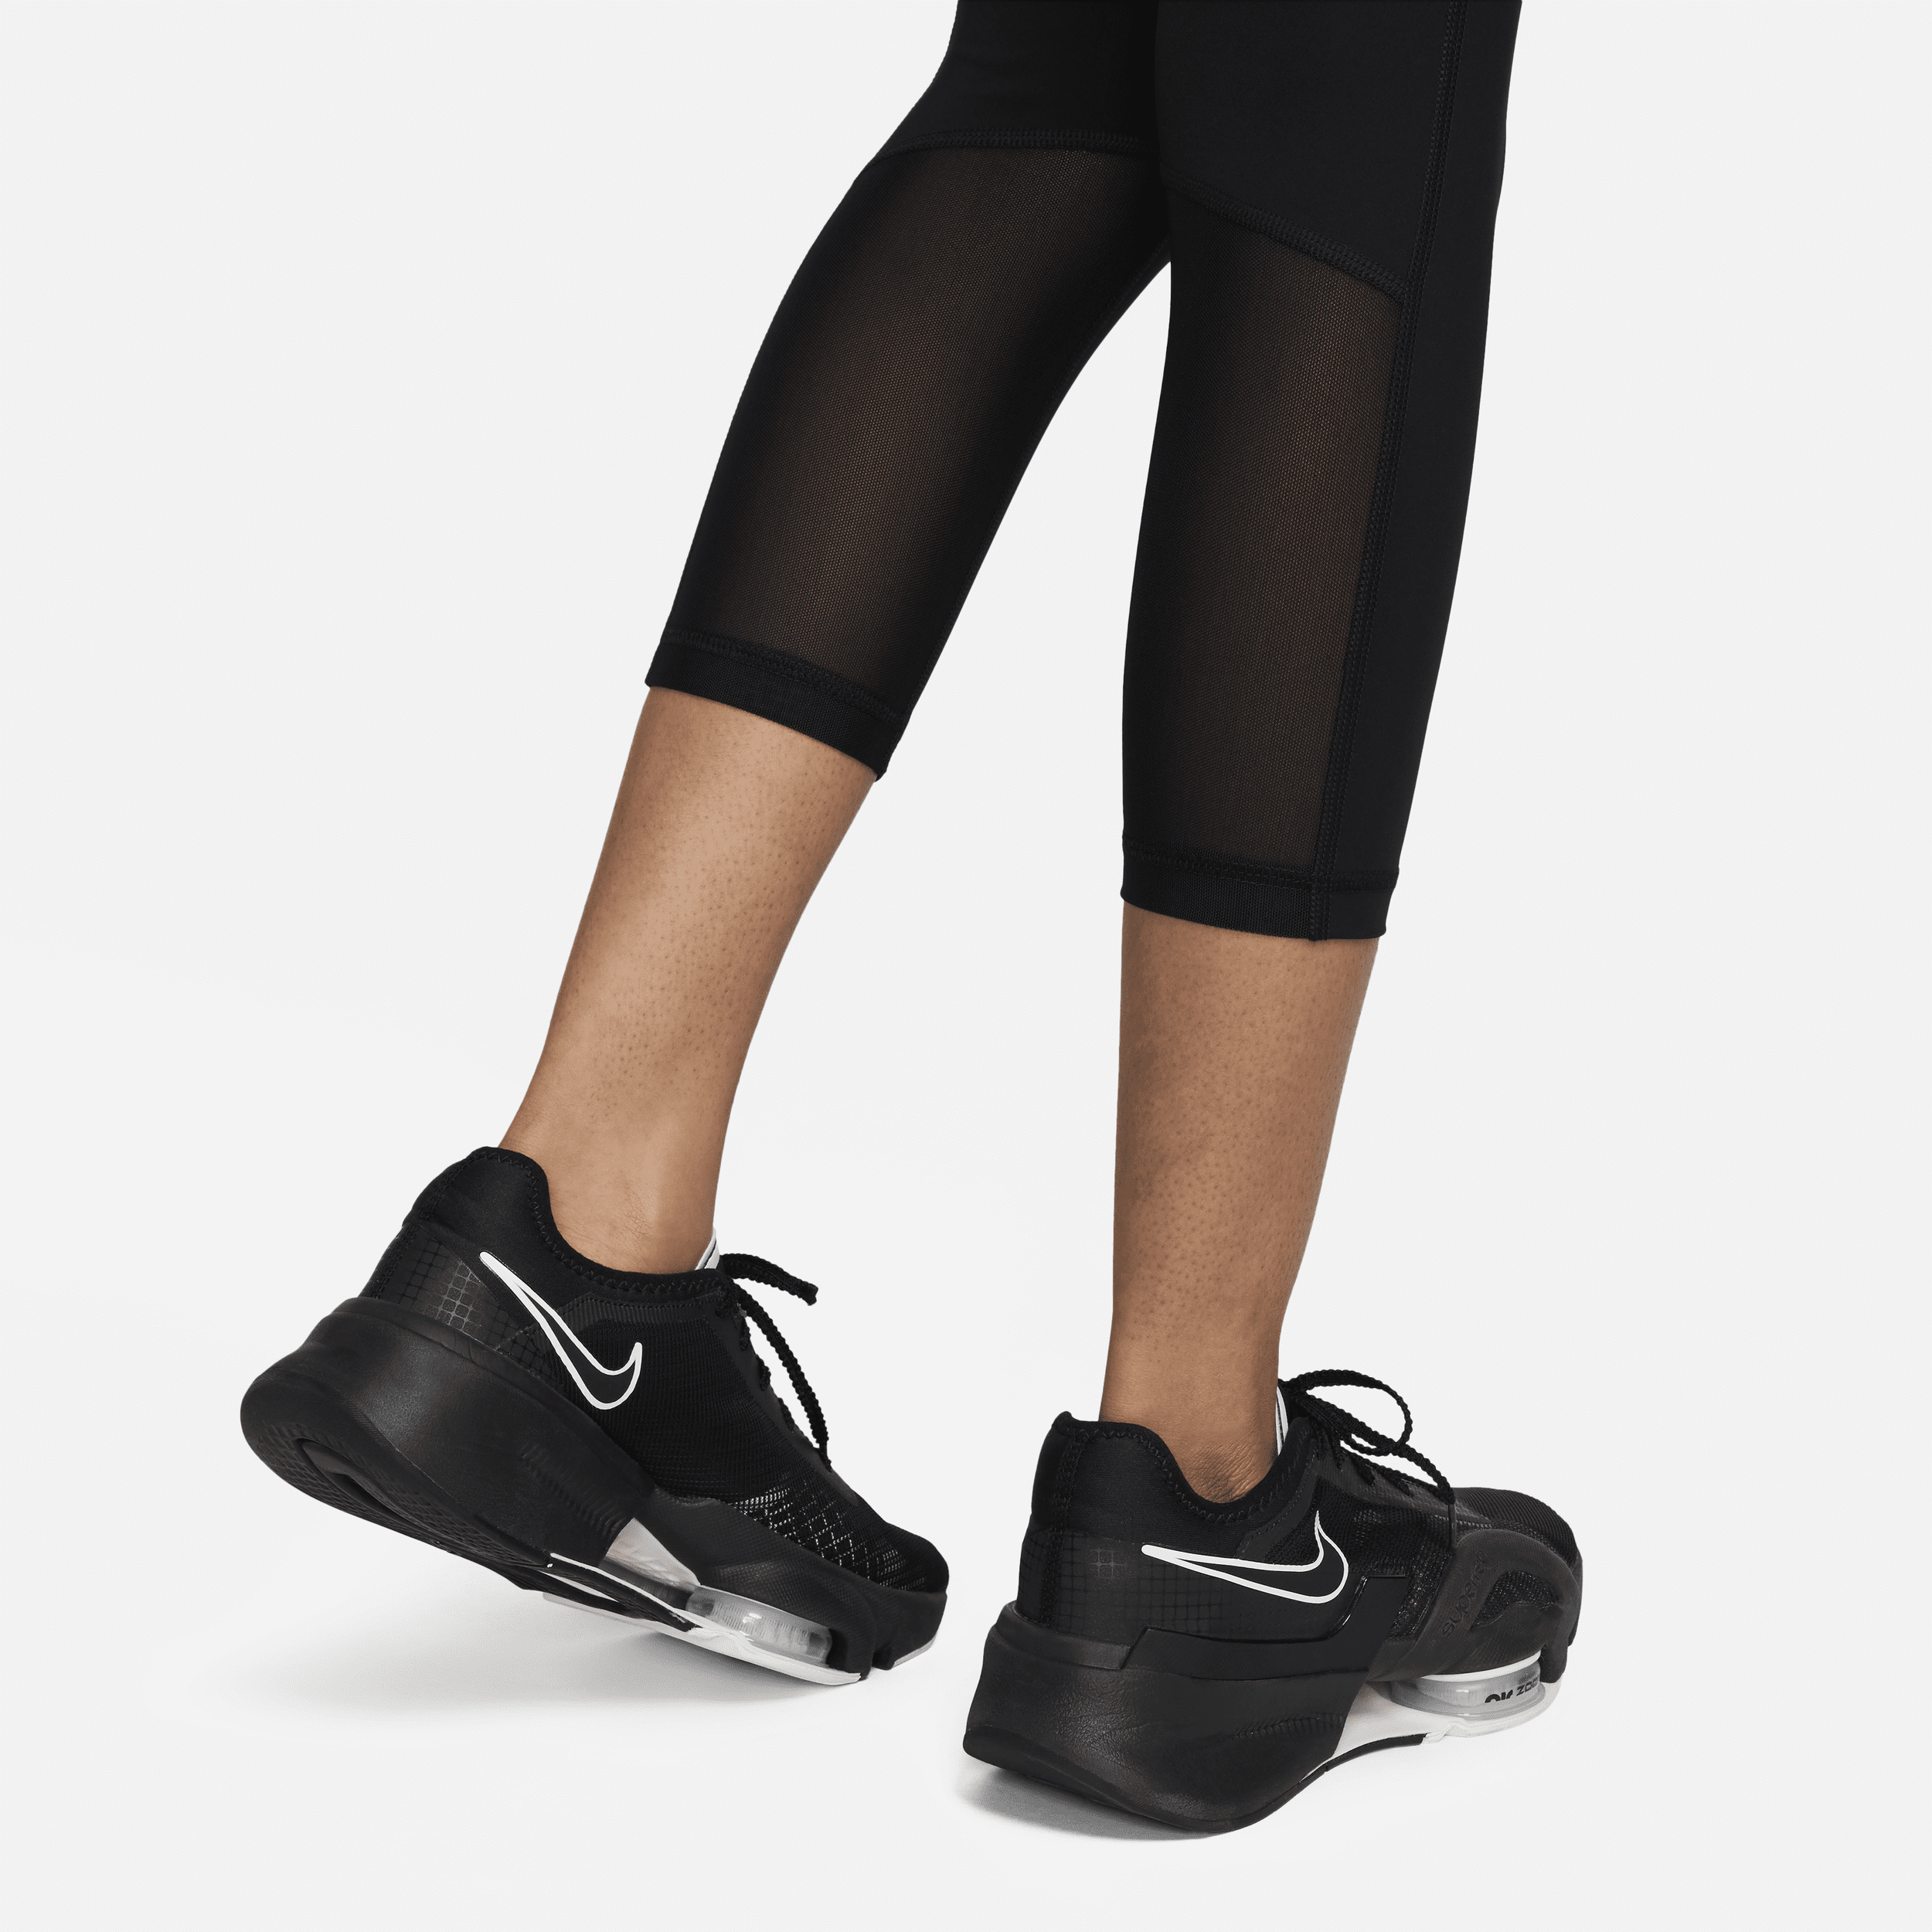 Nike Pro korte legging met mesh vlakken en halfhoge taille voor dames Zwart